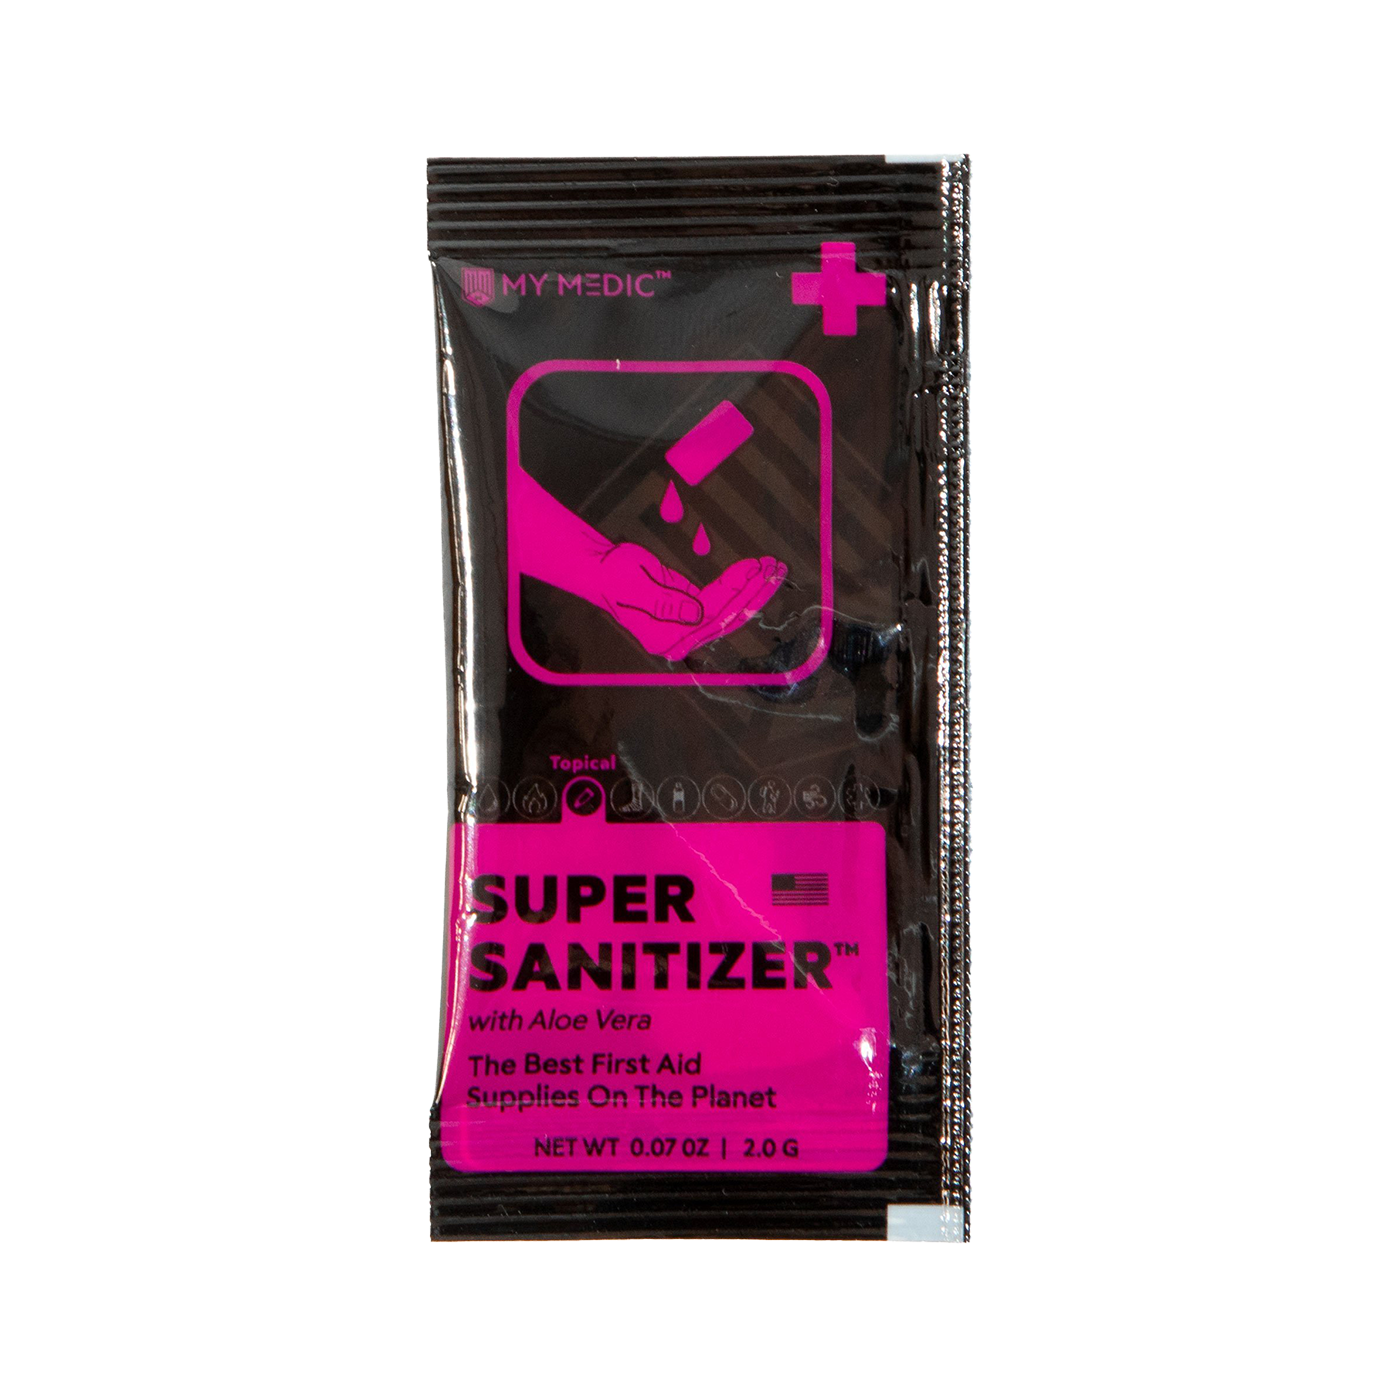 Super Sanitizer